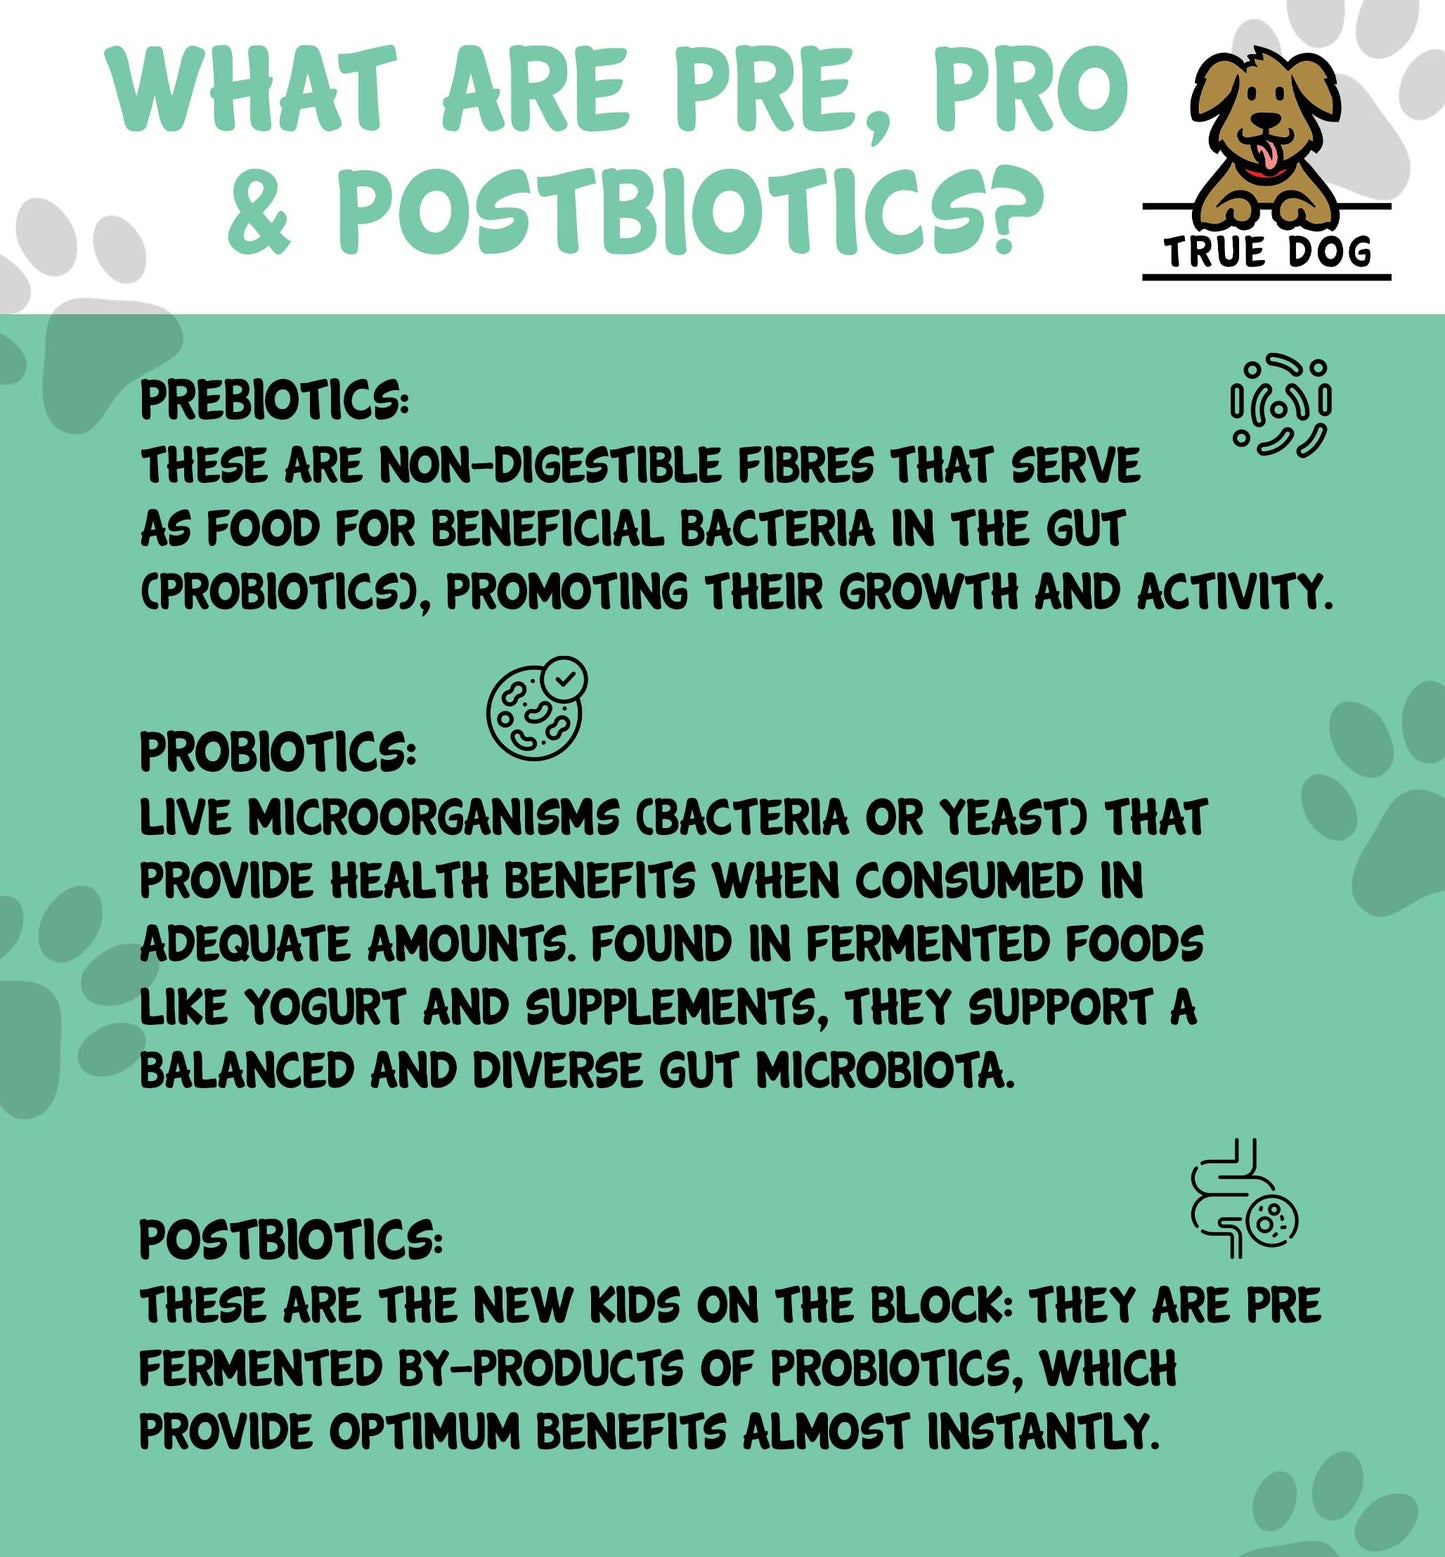 Pre, Pro & Post Biotic Supplement